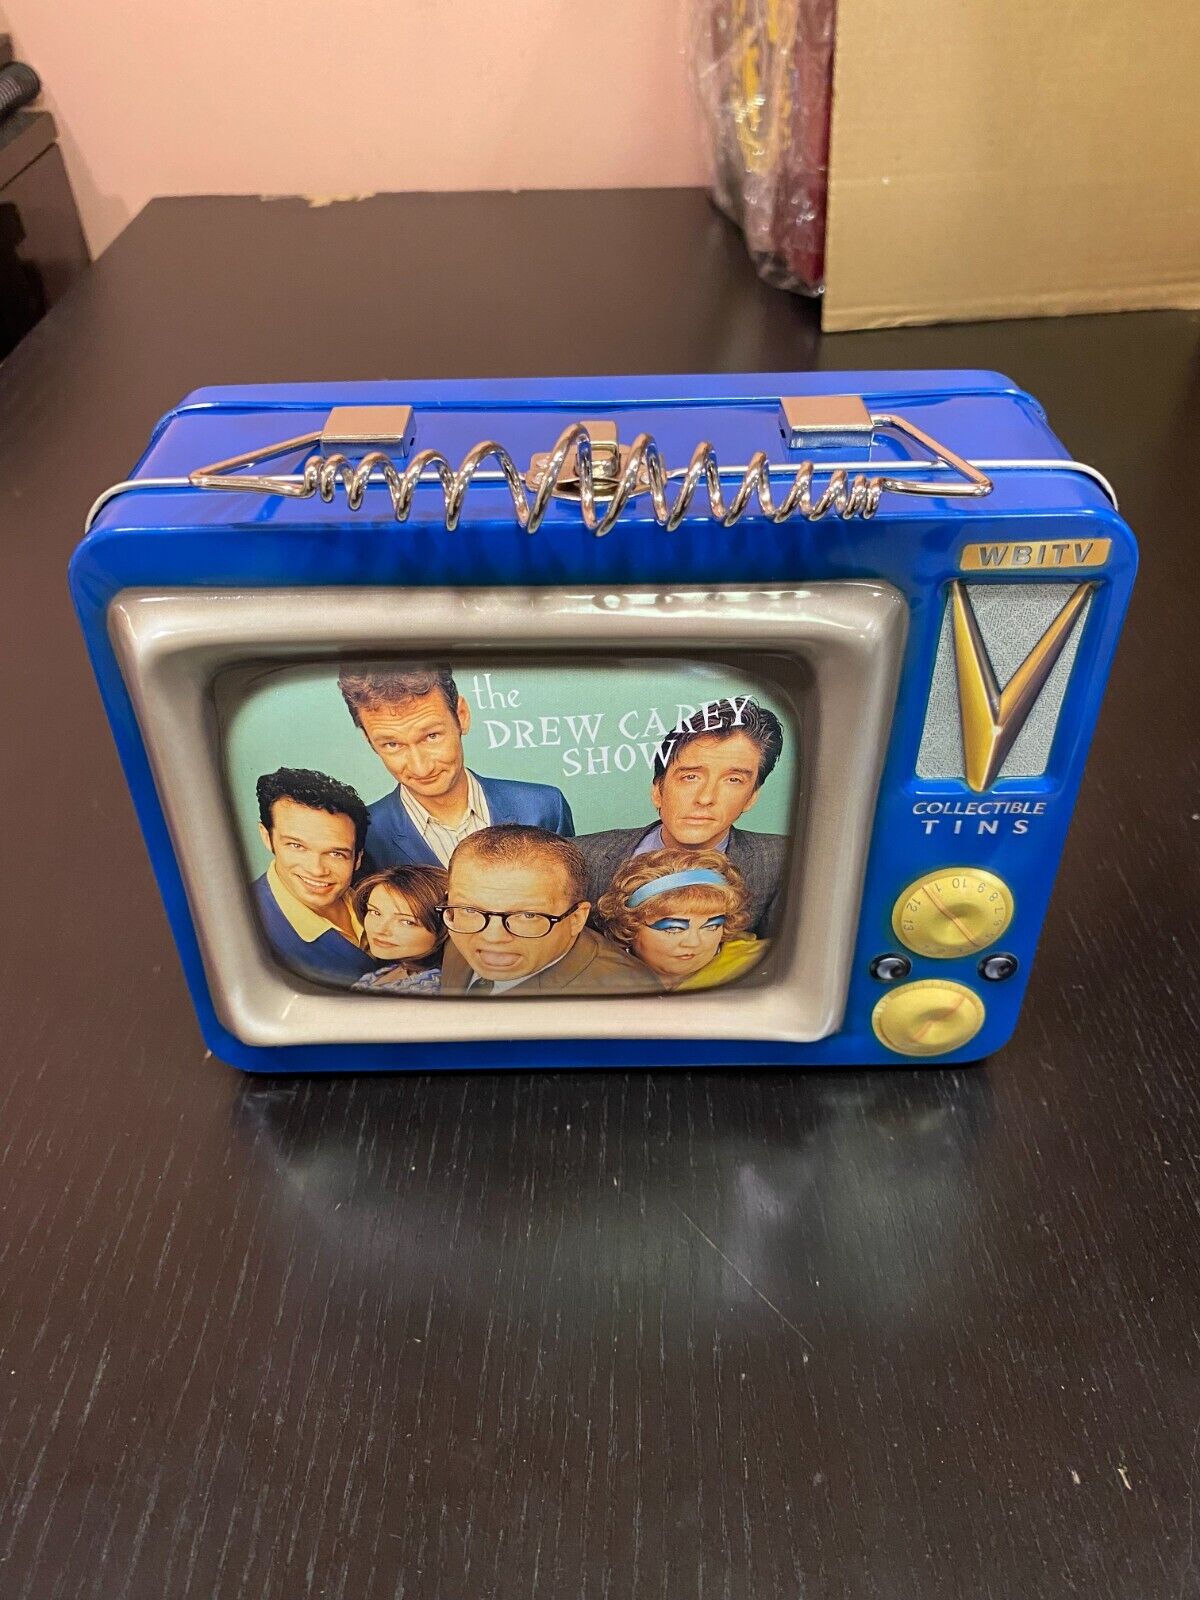 NIB THE DREW CAREY SHOW Lunchbox 2000 Warner Bros.